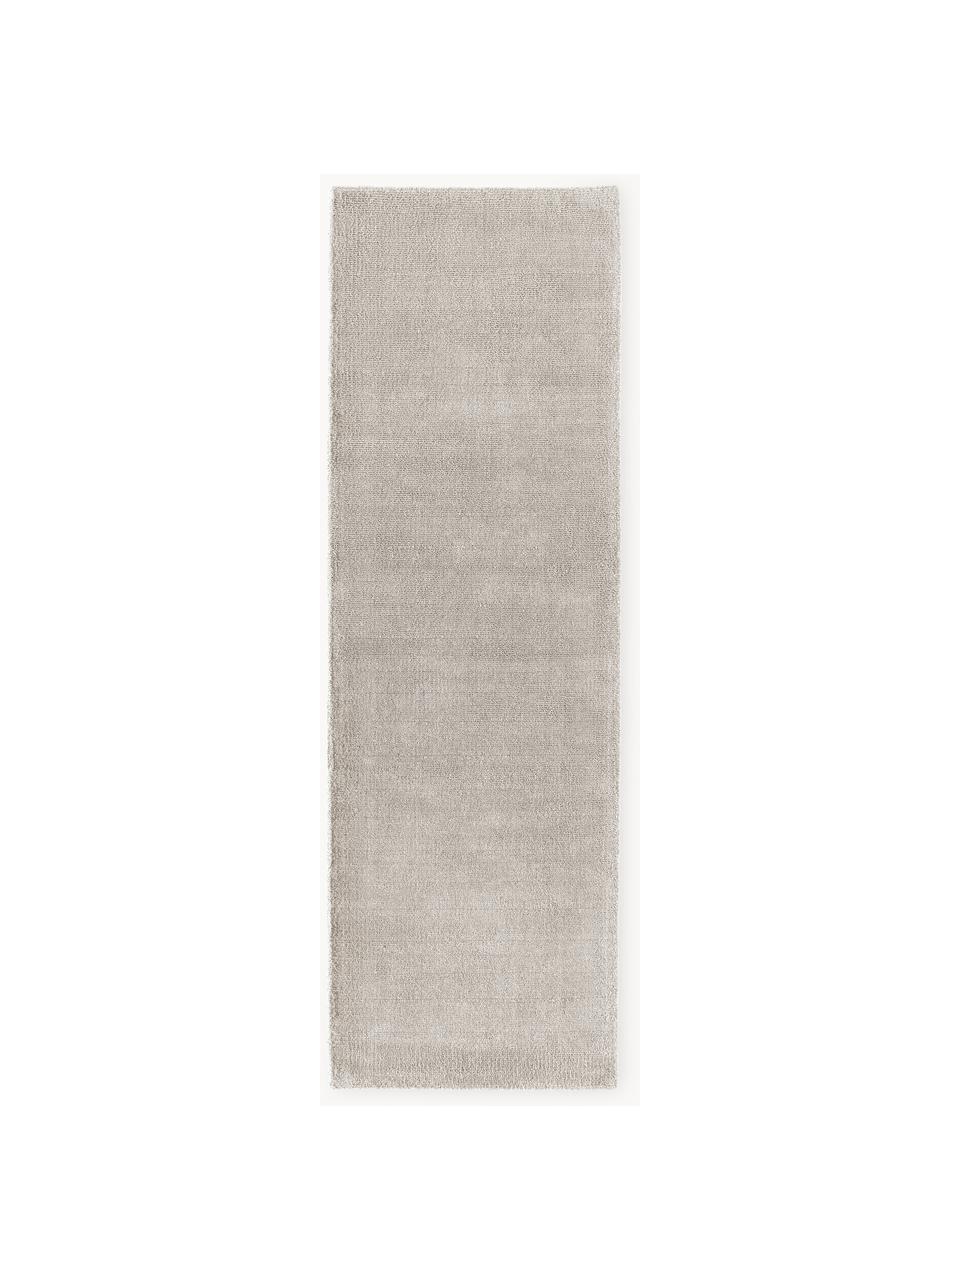 Tapis d'entrée à poils ras tissé main Ainsley, 60 % polyester, certifié GRS
40 % laine, Gris clair, larg. 80 x long. 250 cm